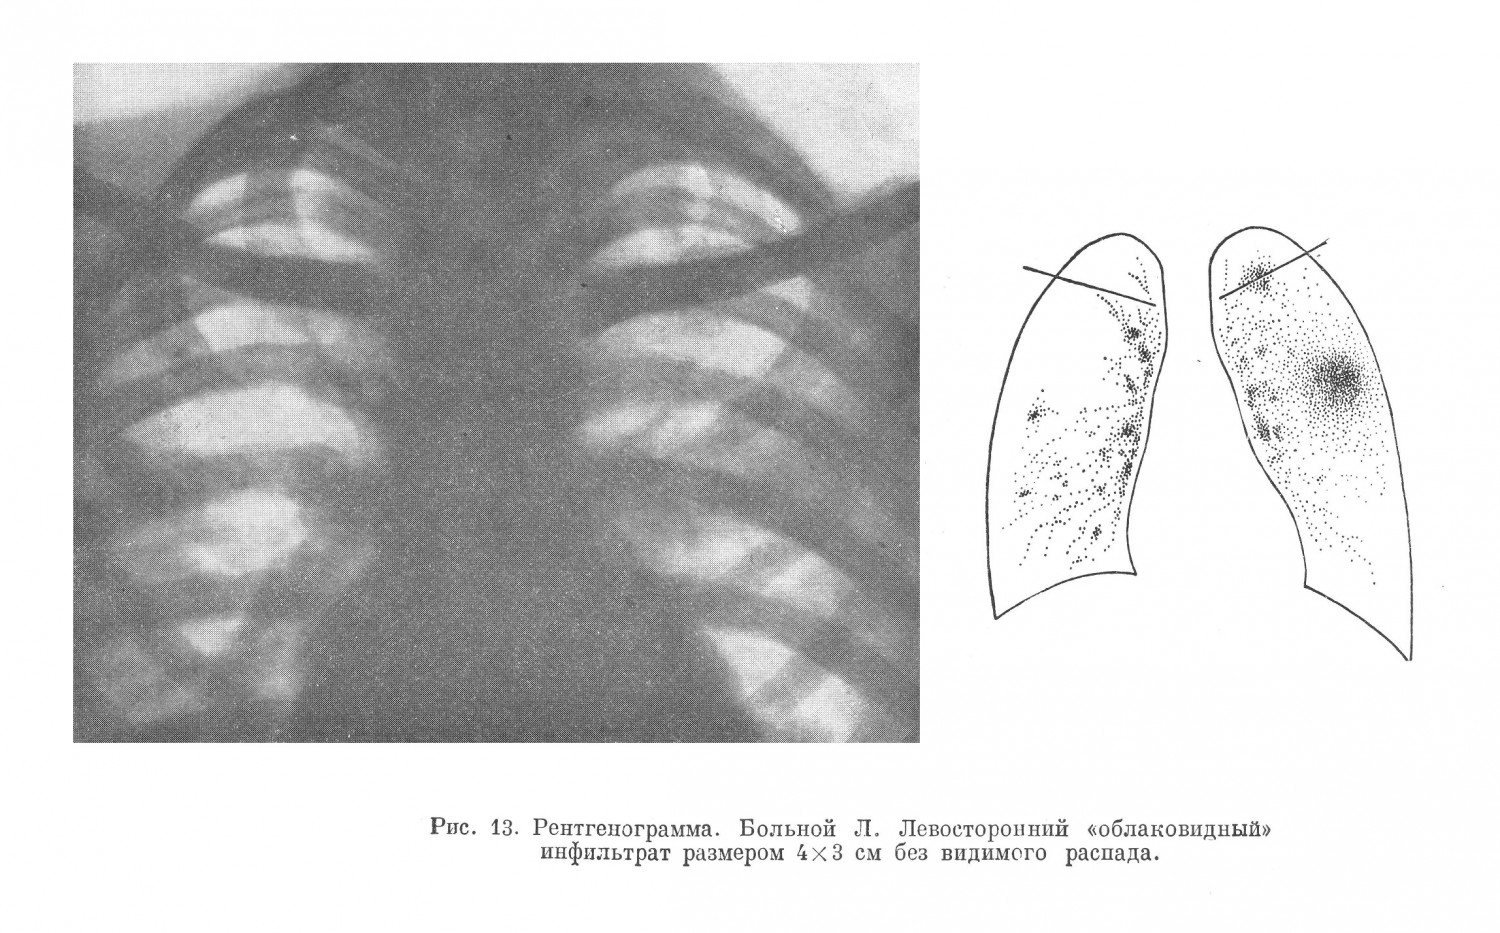 рентгеноскопии обнаружен левосторонний (во втором межреберье) облаковидный инфильтрат размером